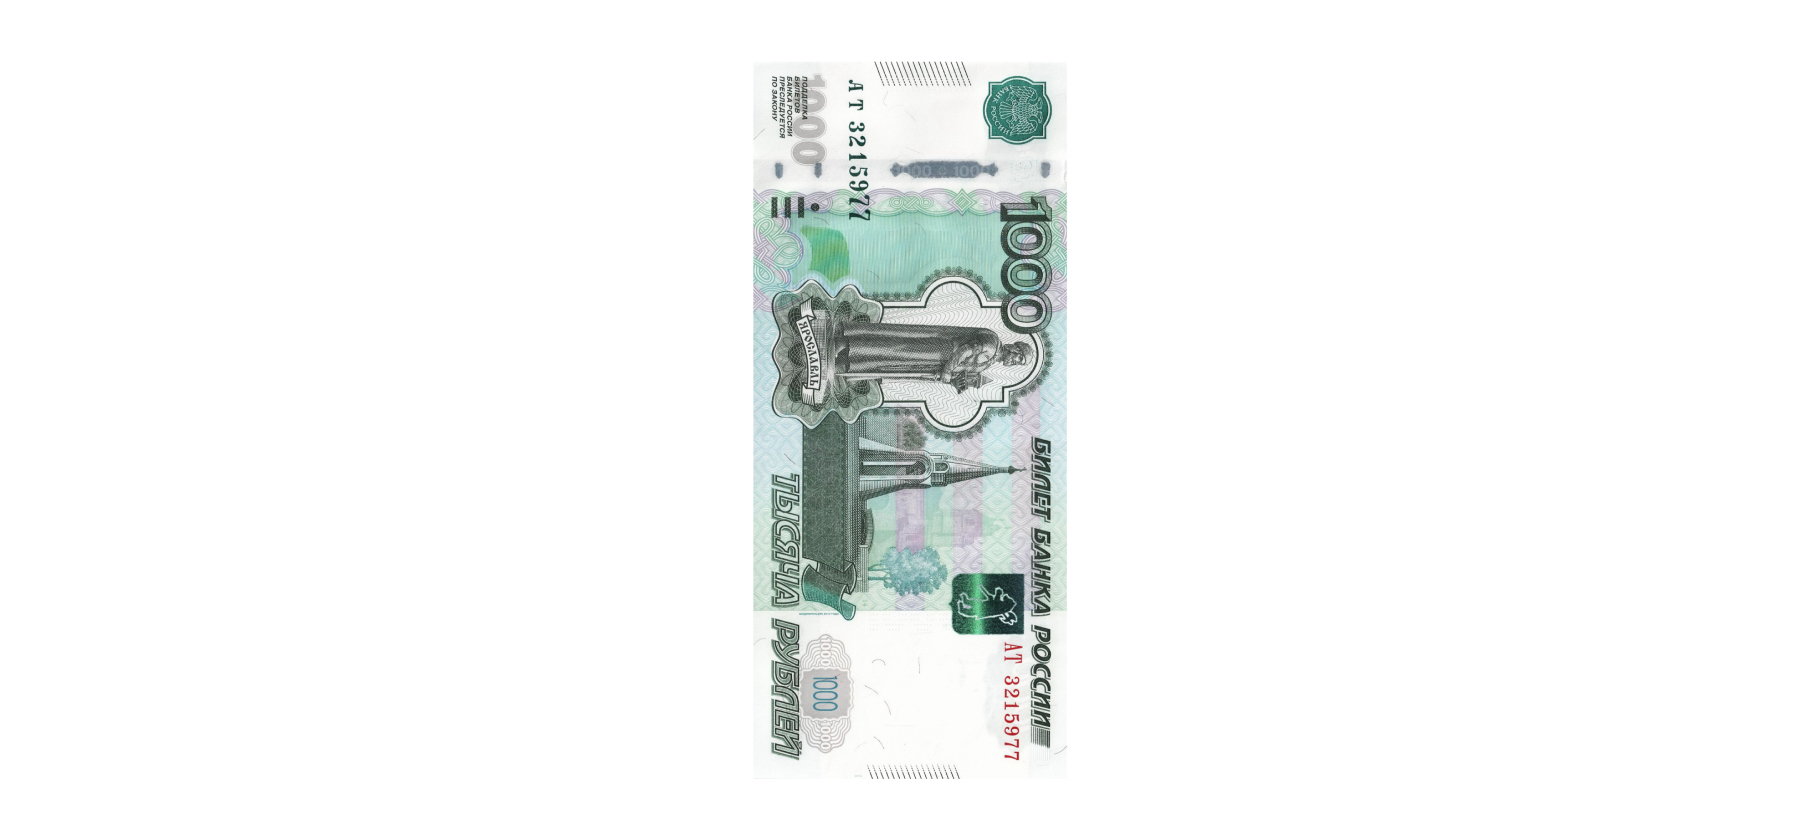 Что можно купить на тысячу рублей в разных странах